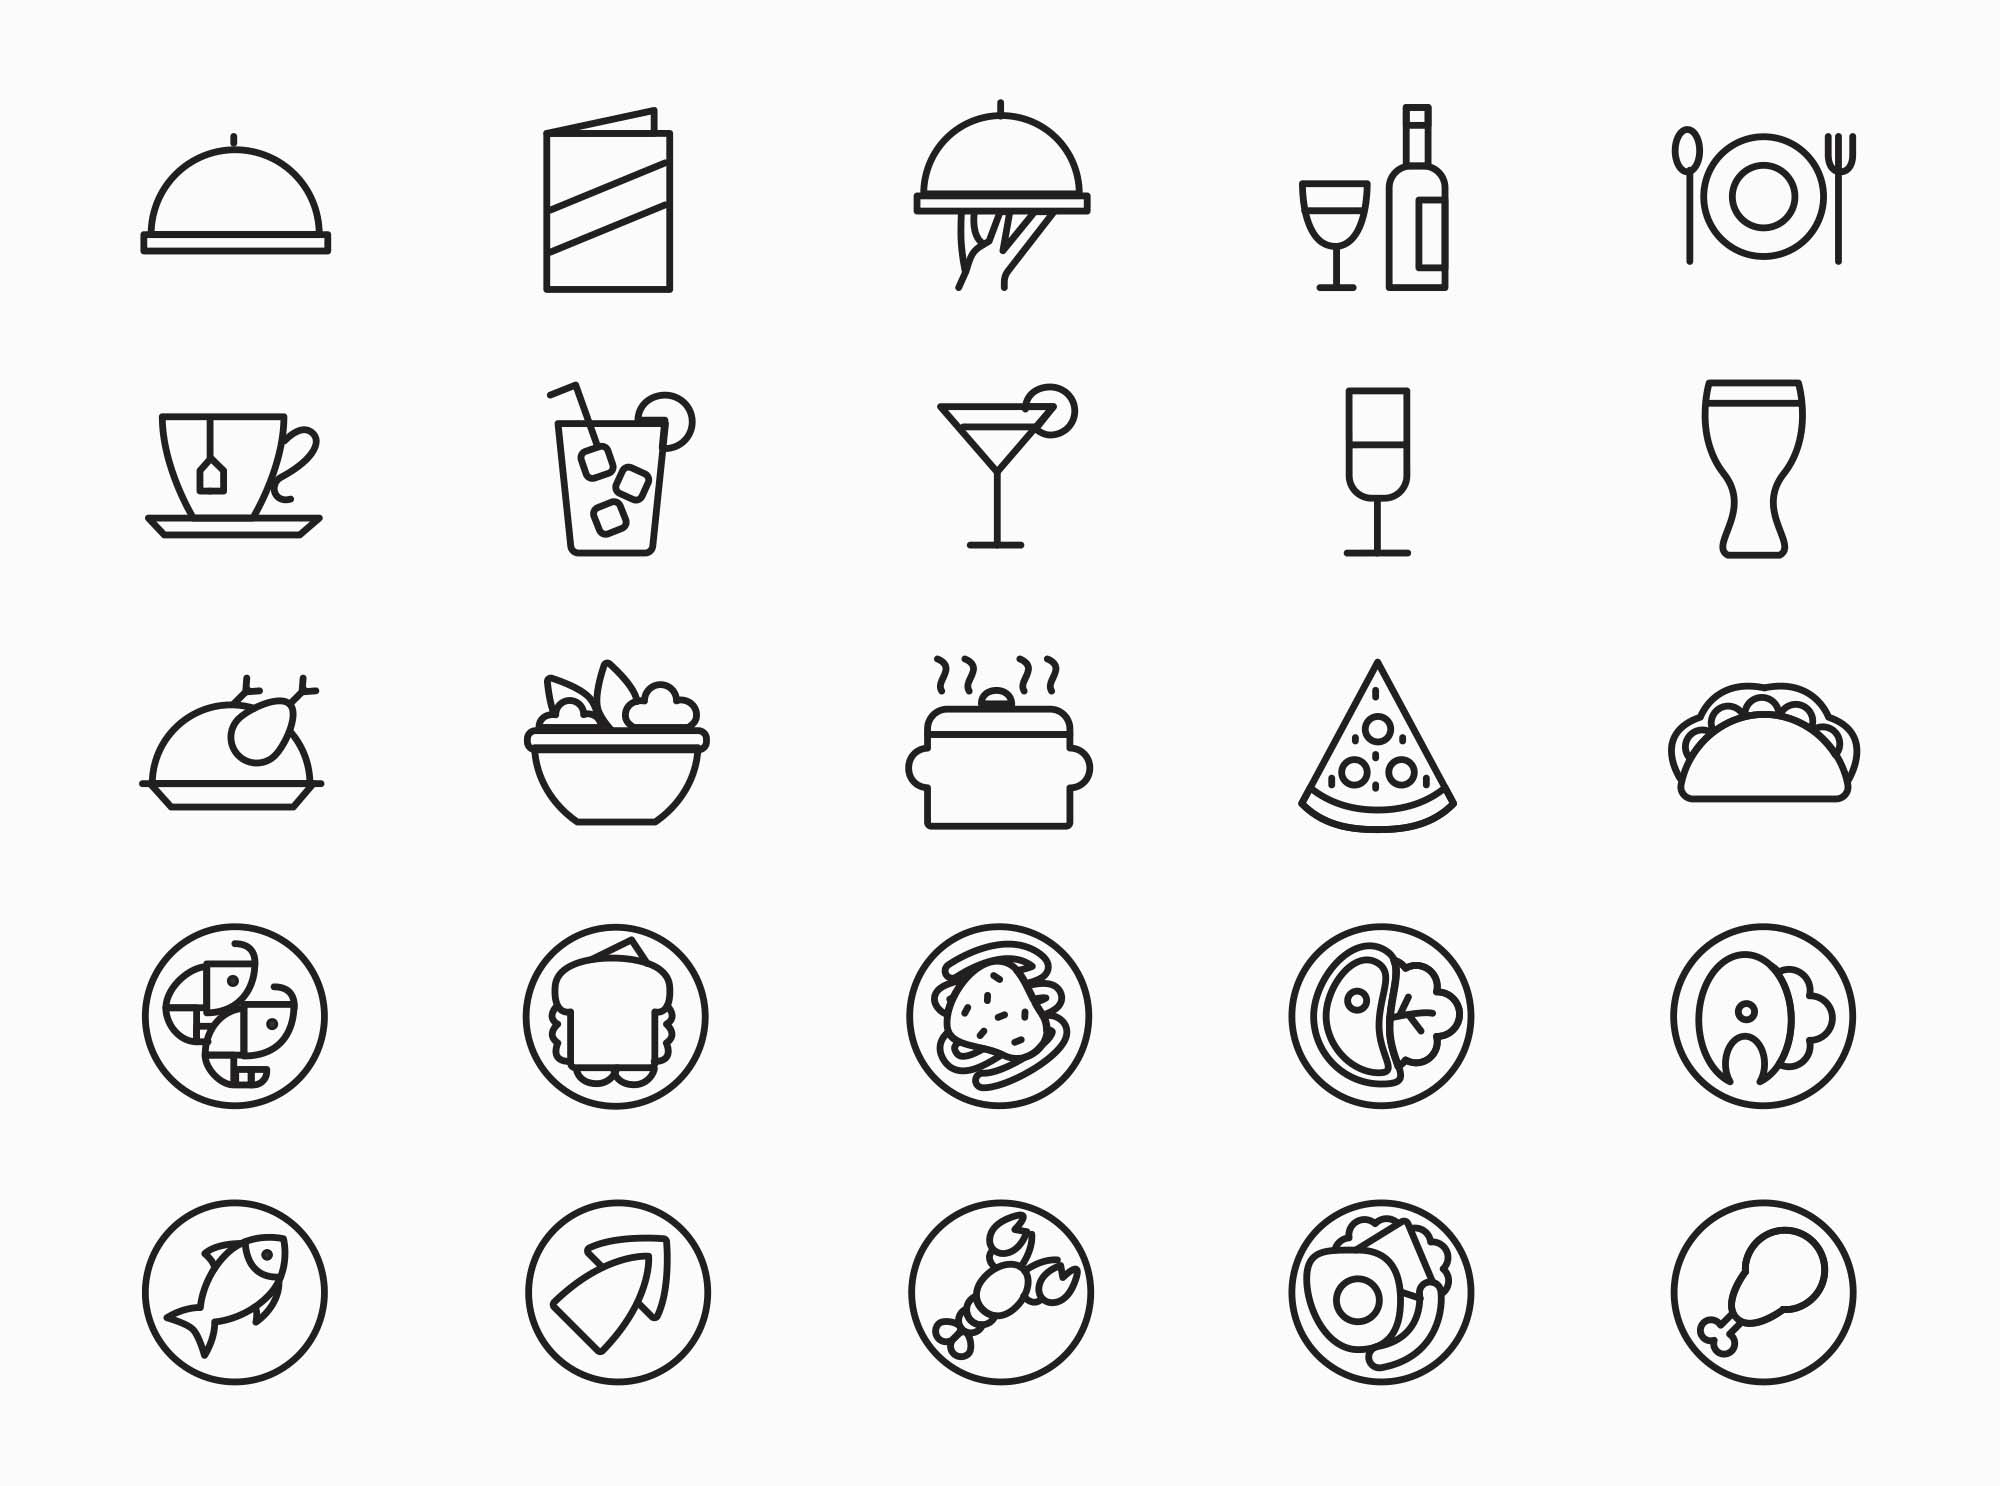 25枚餐厅菜单设计 可用的矢量线性素材库精选图标 25 Restaurant Menu Icons插图(1)